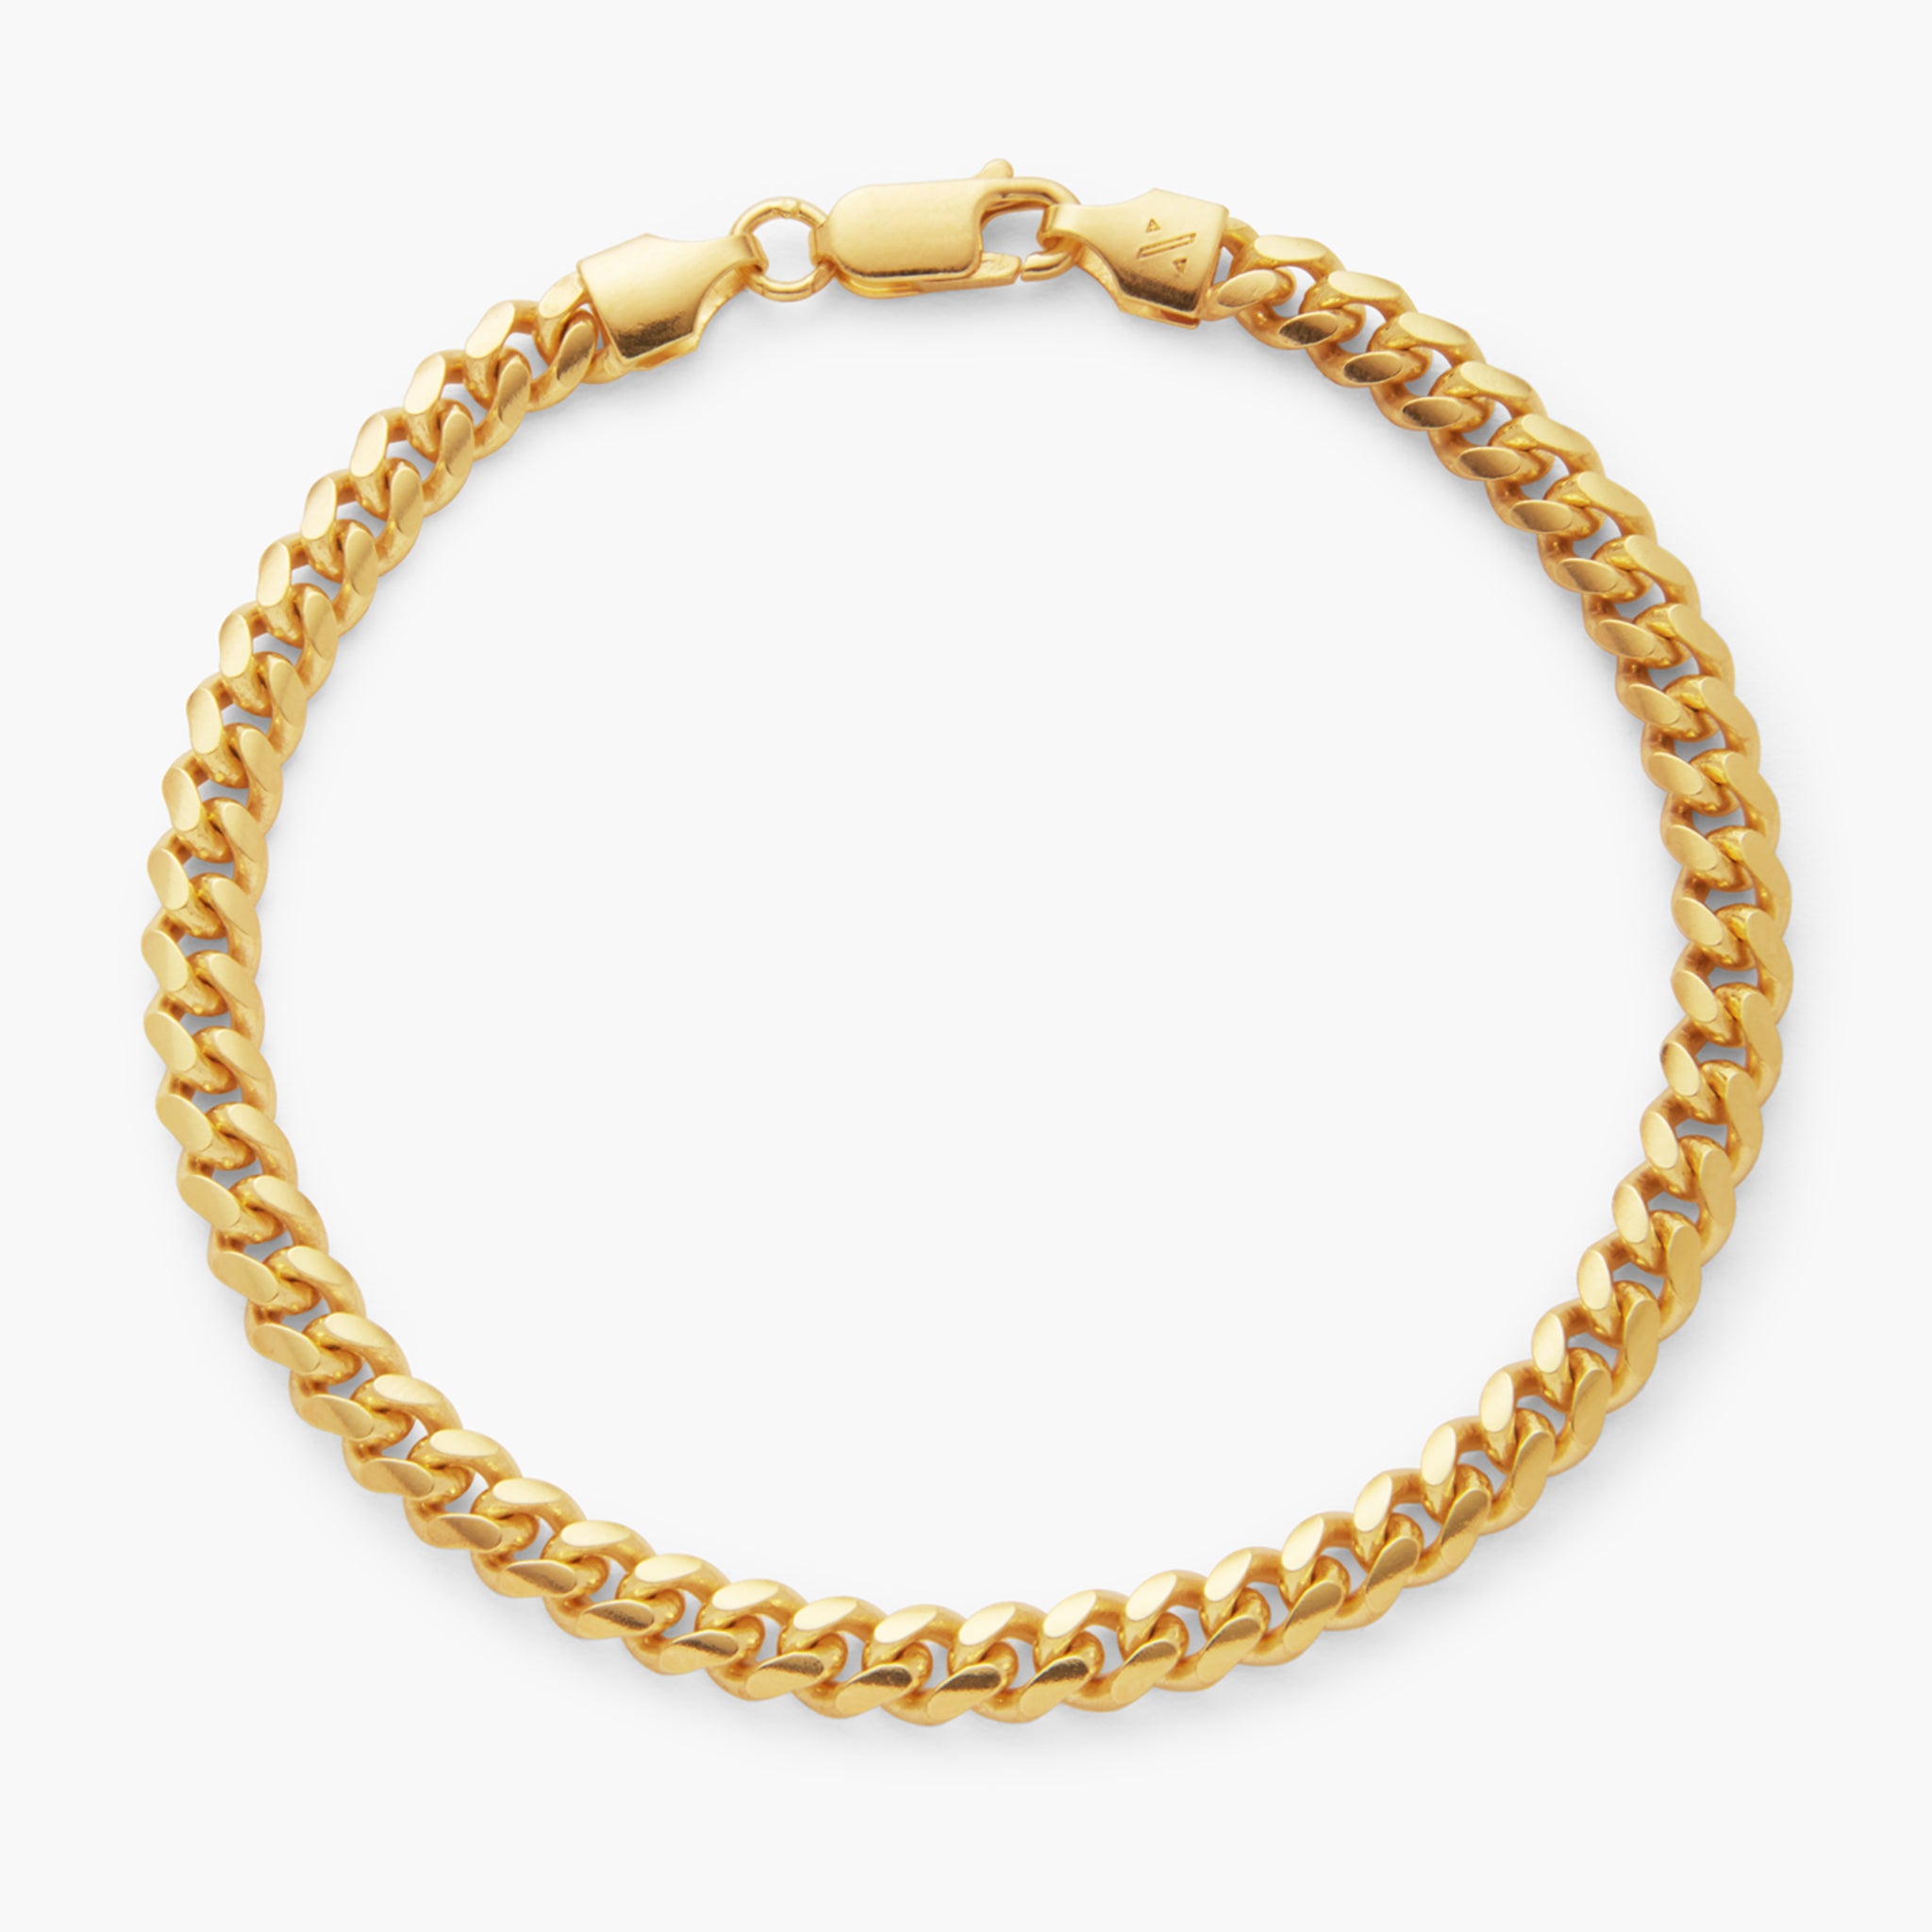 JAXXON 6mm Cable Gold Bracelet